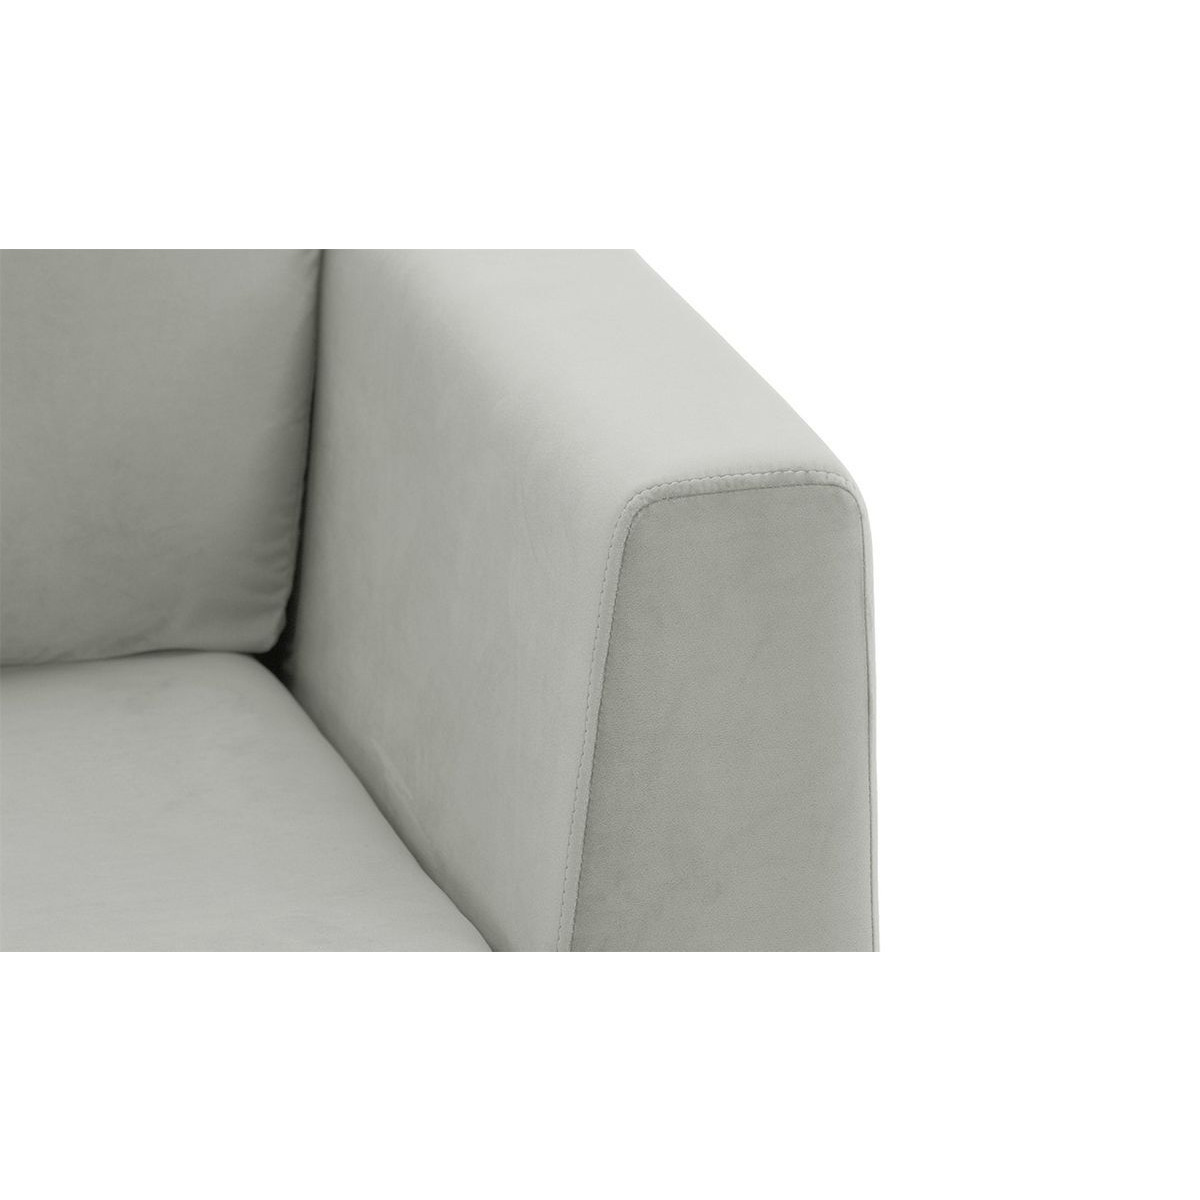 Gosena 2 Seater Sofa, silver, Leg colour: chrome metal - image 1